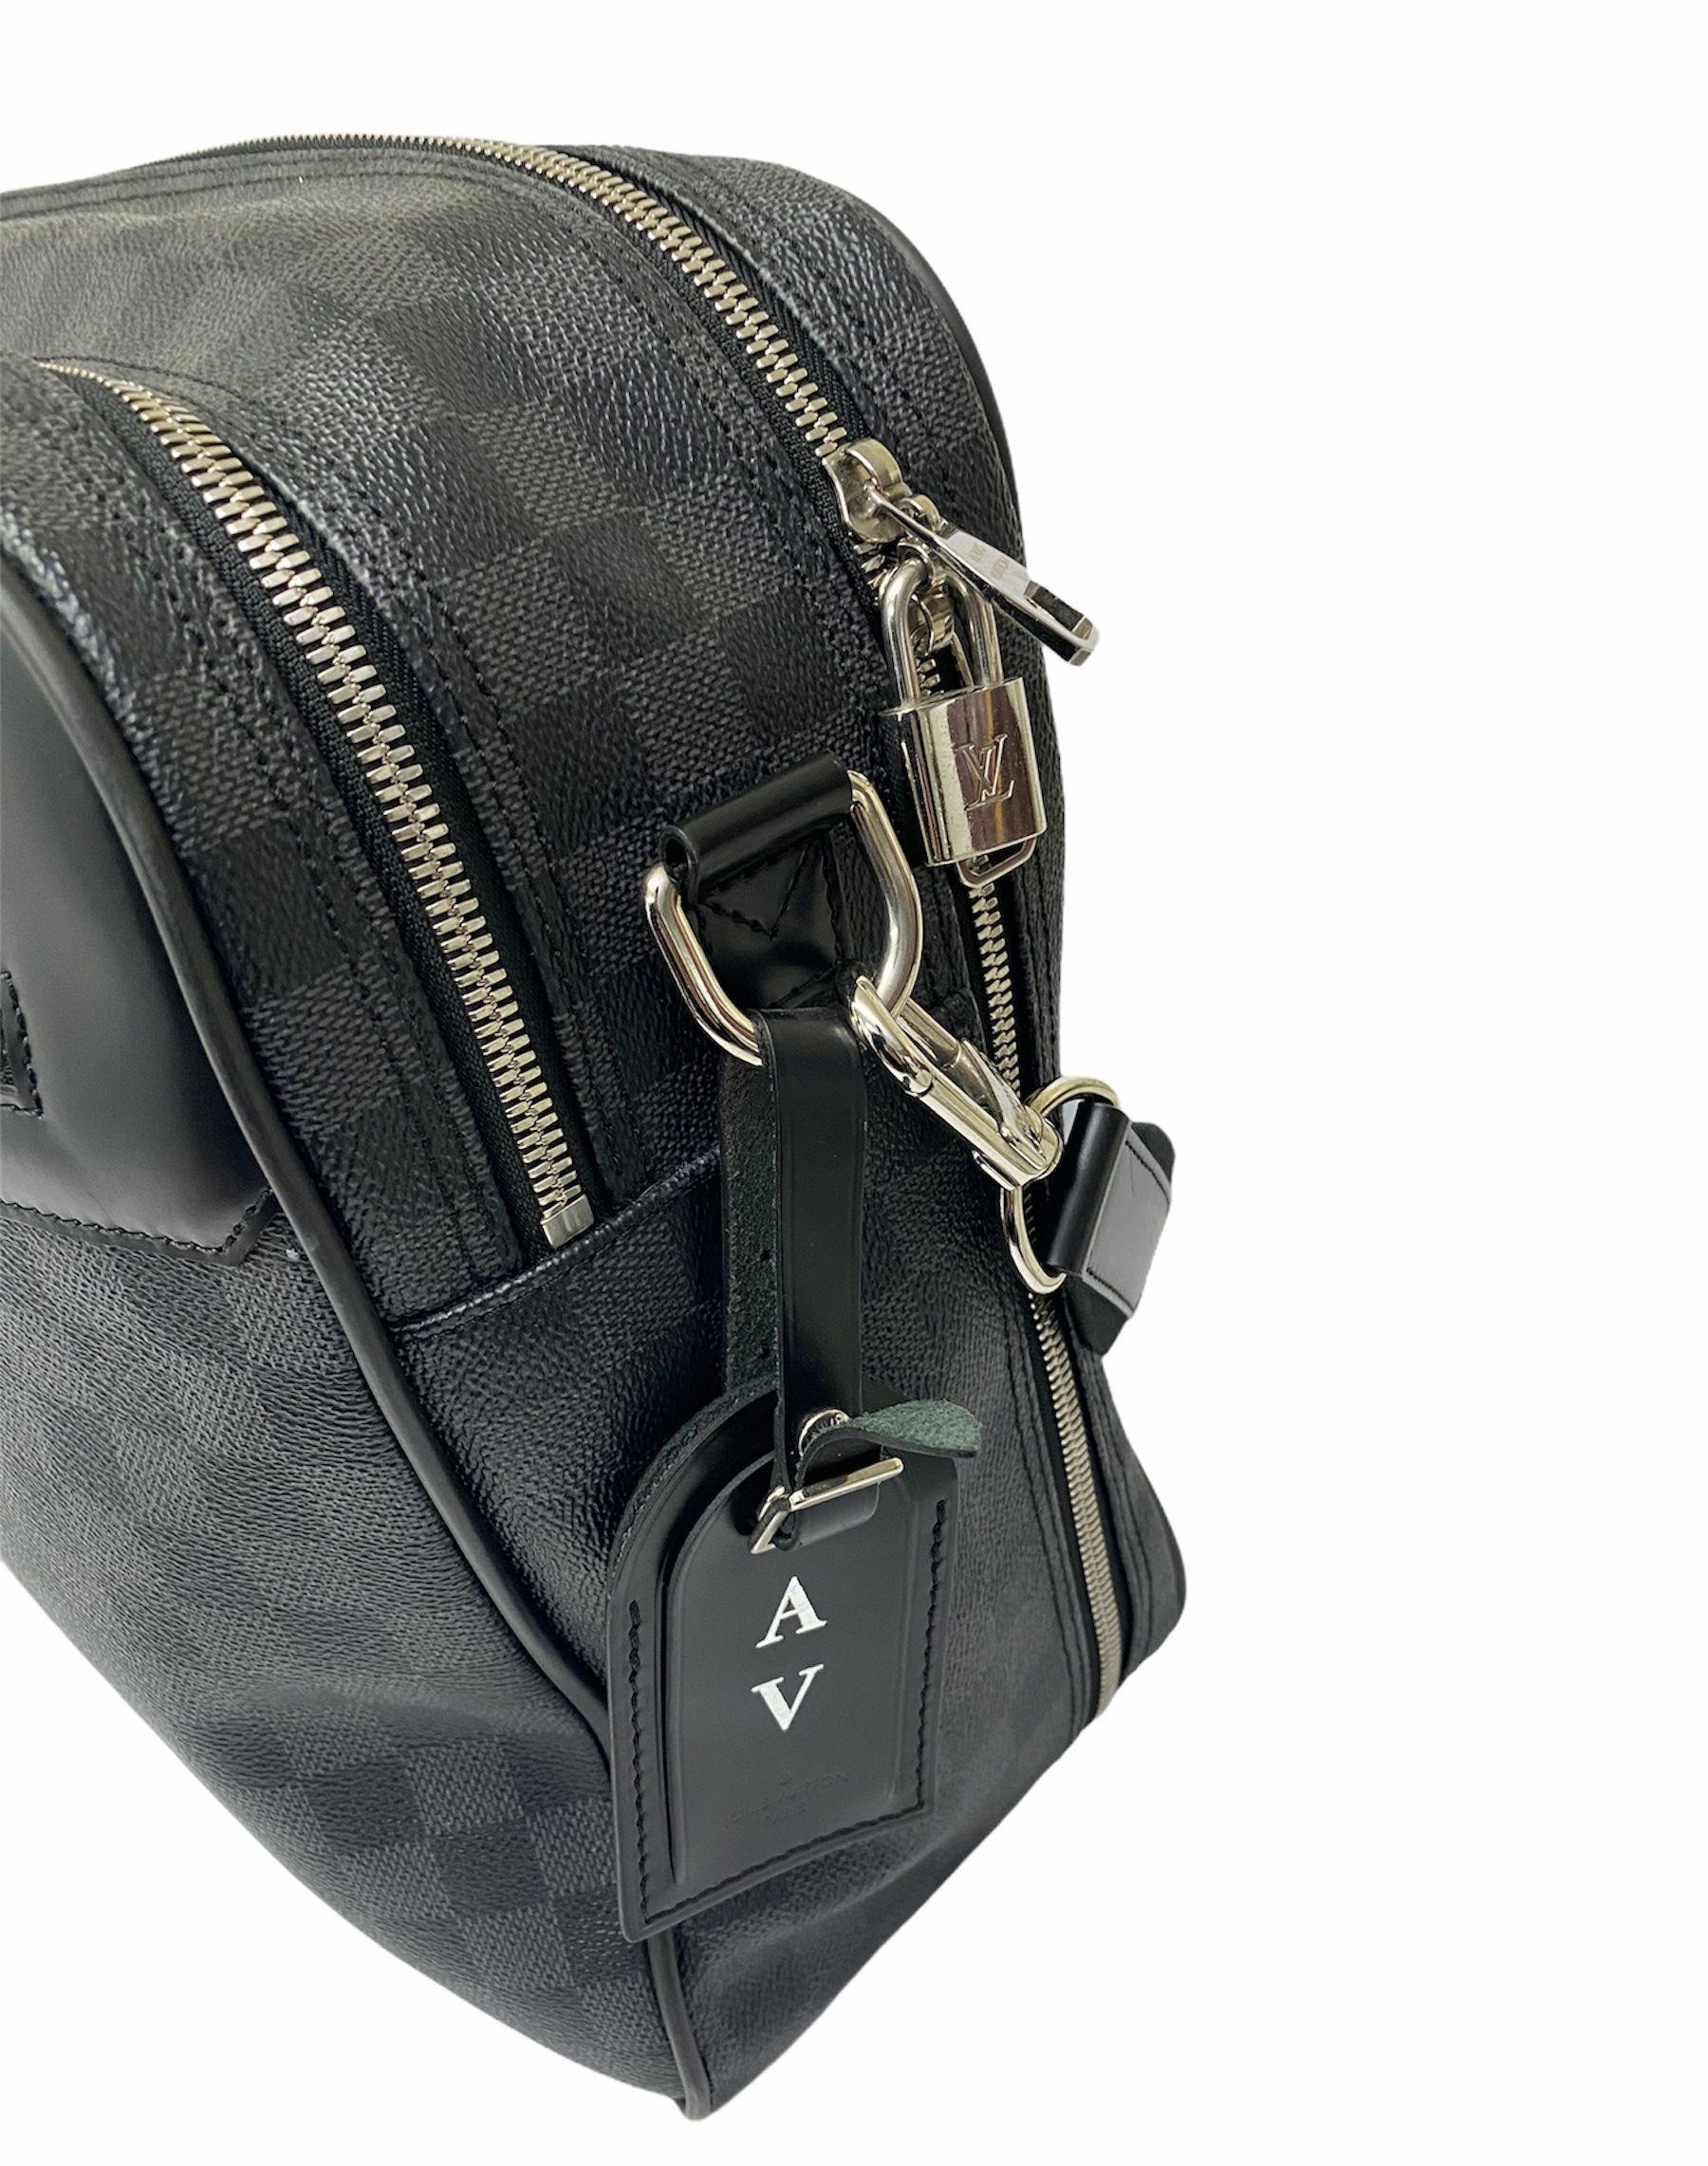 Black Louis Vuitton Damier Leather Shoulder Bag 